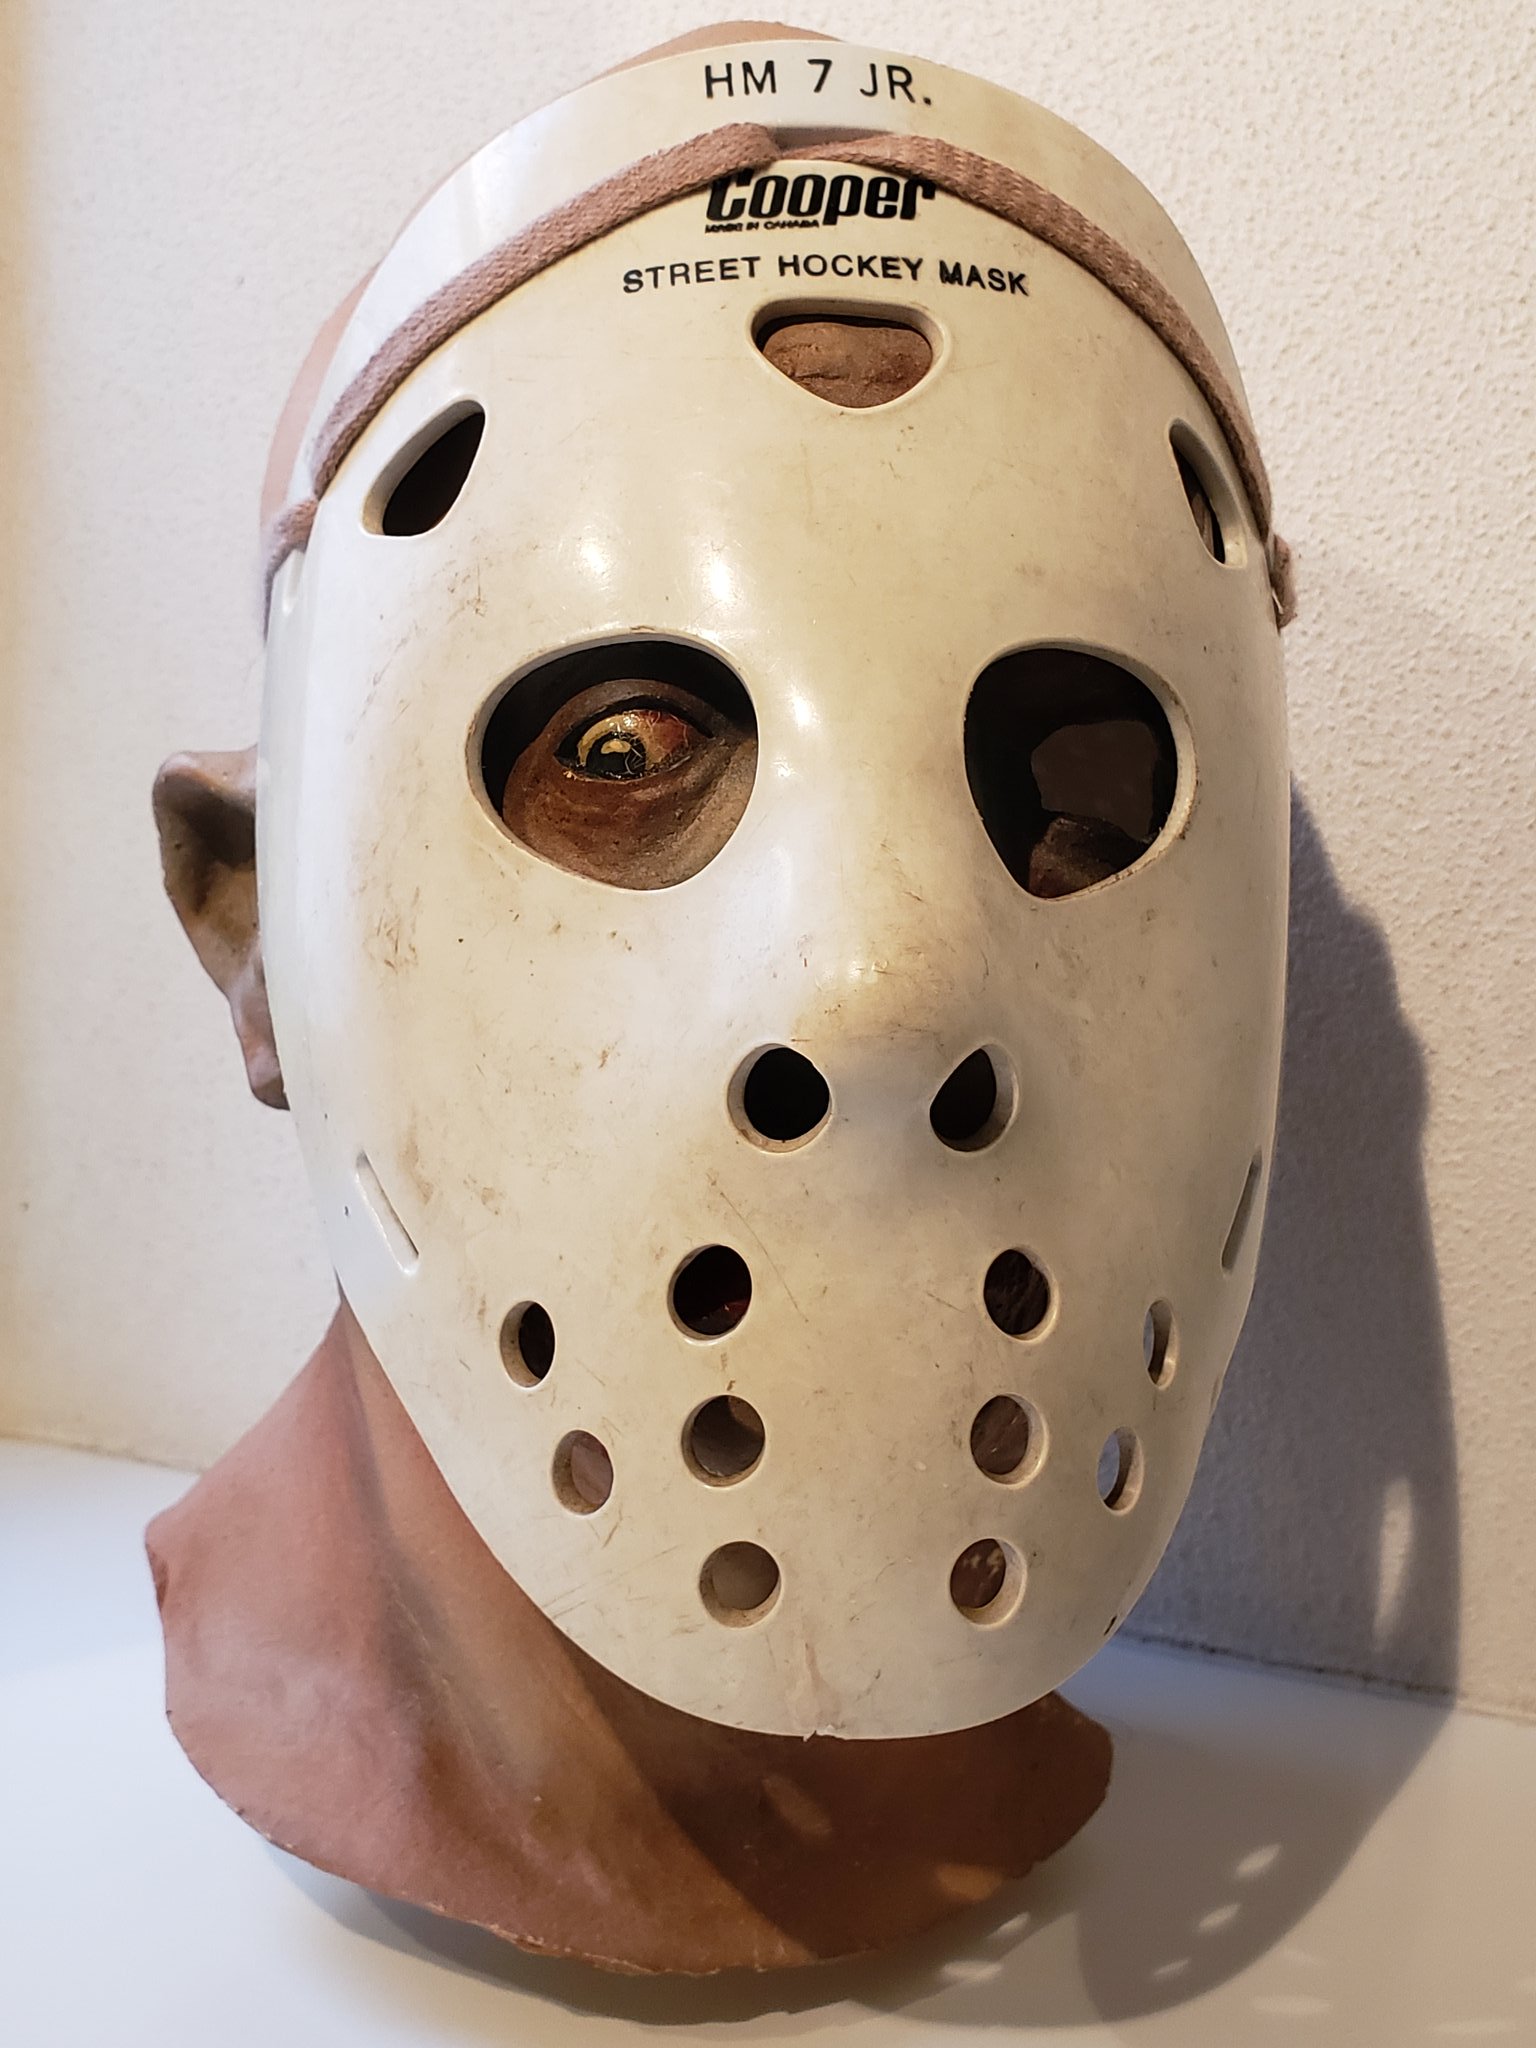 ネズミツオ 13日の金曜日 完結篇 でアプライエンス用に製作された本物のジェイソンにこれまた実物のホッケーマスクを被せてみましたw 劇中使用モデルの別デザイン T Co 7fptrqbi84 Twitter